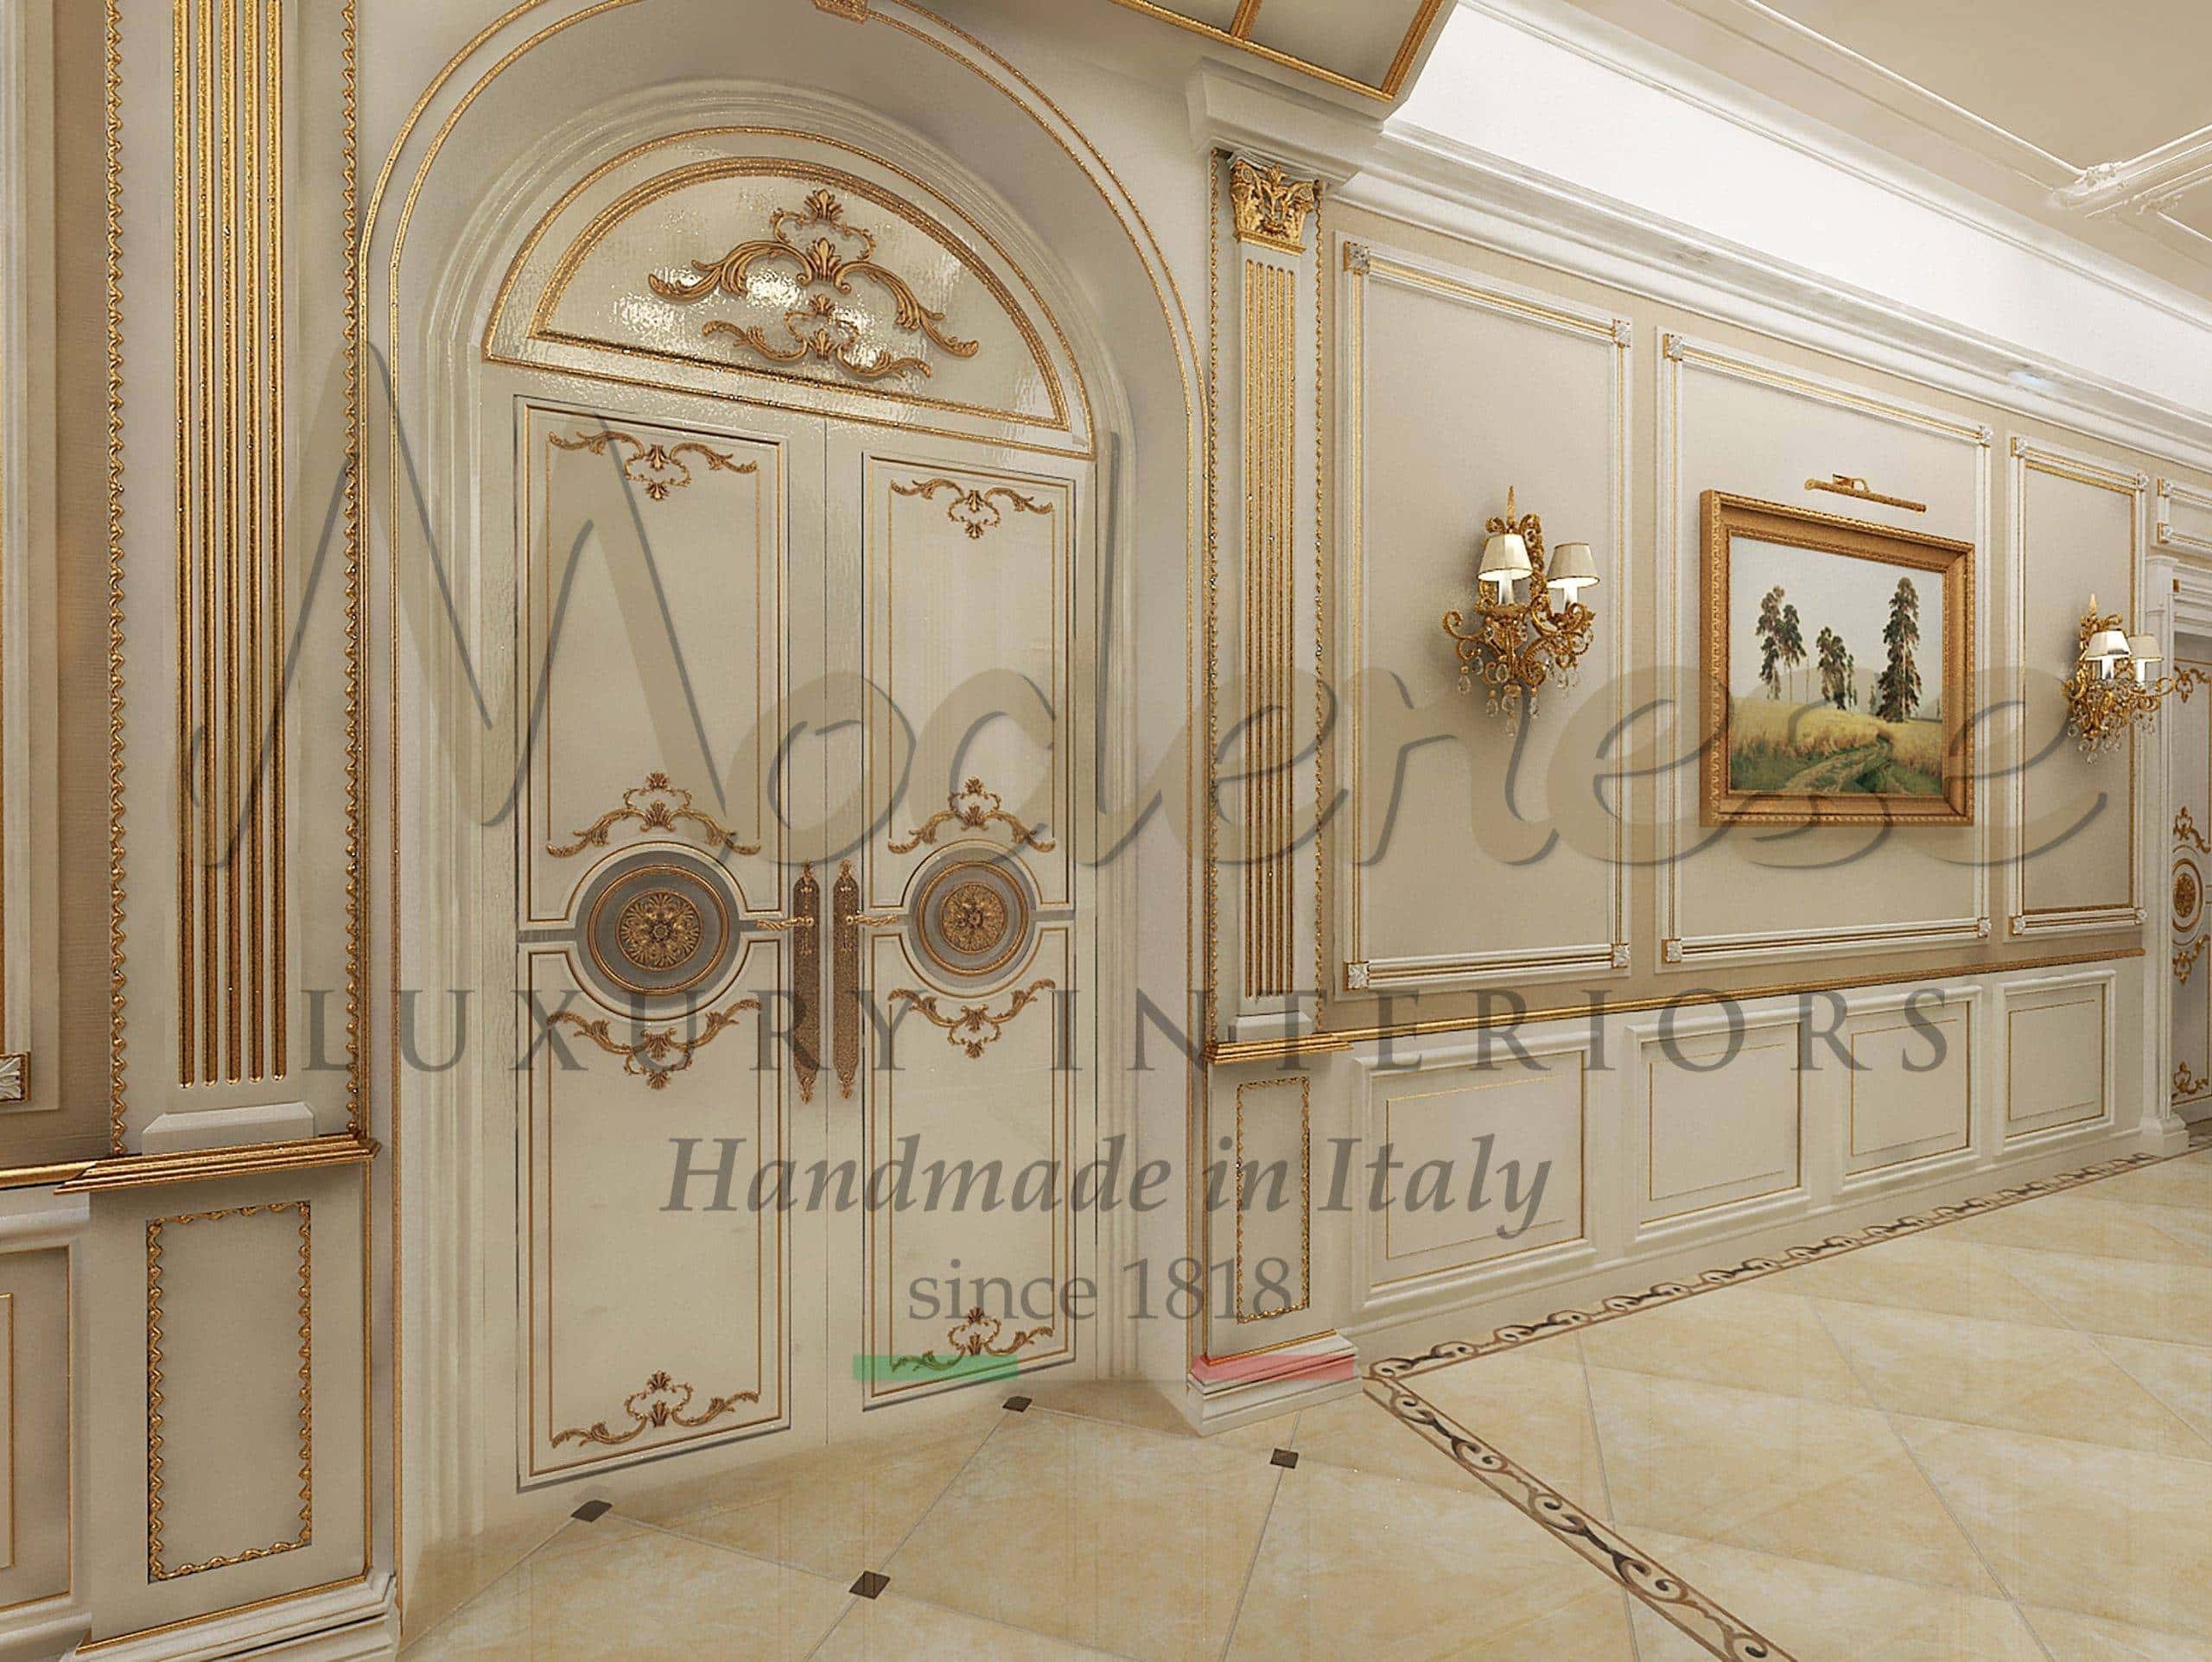 projekt vybavení interiéru designové služby luxusní tradiční ručně vyráběné dveře na zakázku klasický barokní styl plátko é zlato masivní dřevo exkluzivní jedinečný elegantní viktoriánský desig